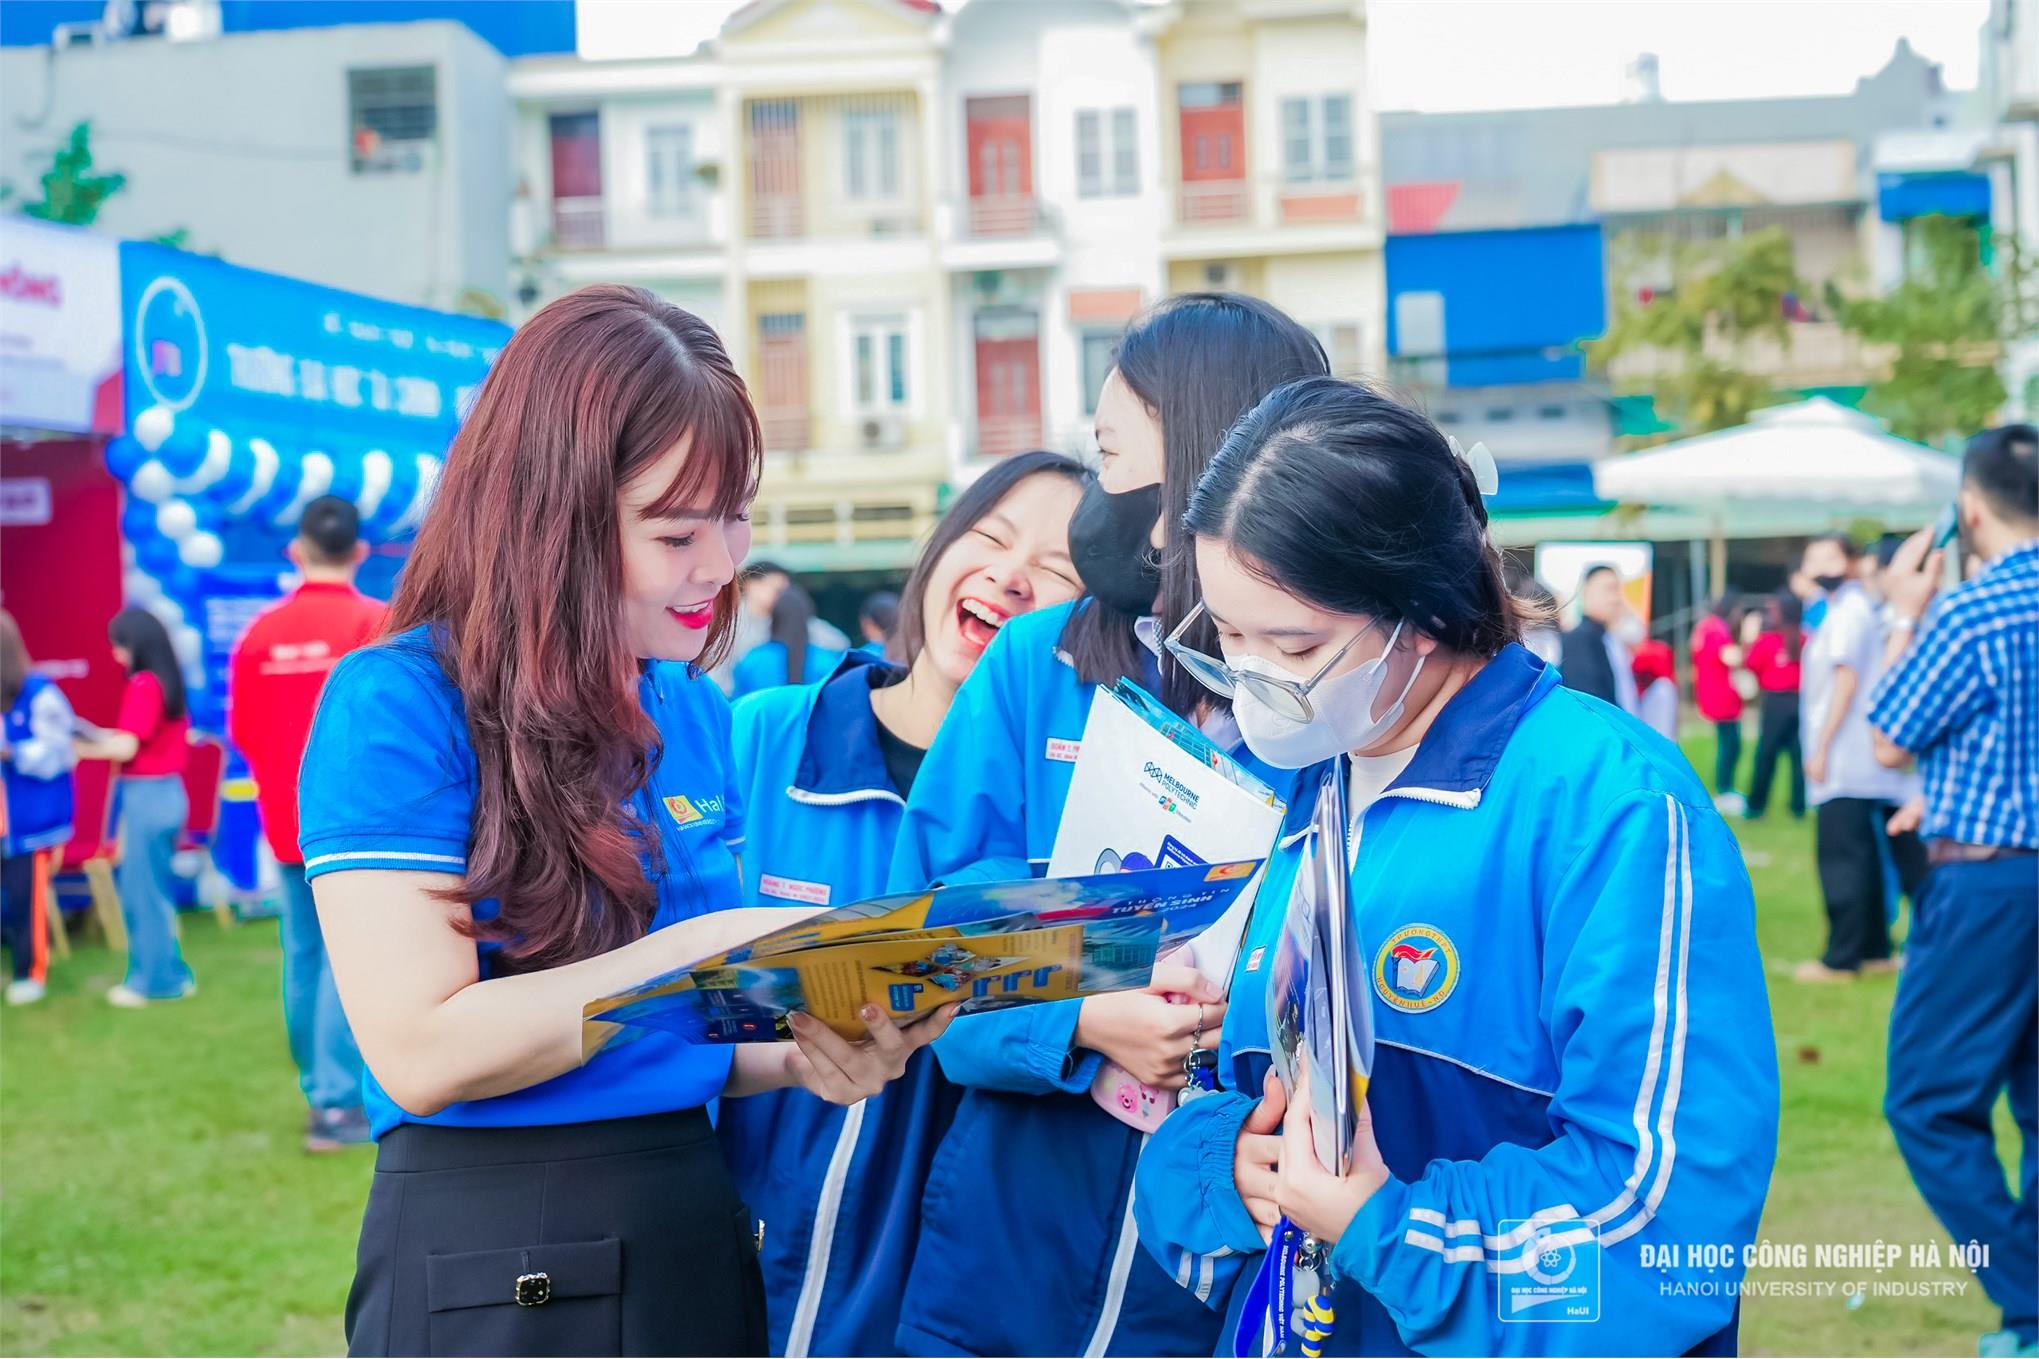 [daibieunhandan] Trường Đại học Công nghiệp Hà Nội mở 2 ngành học mới An toàn thông tin và Ngôn ngữ Trung Quốc